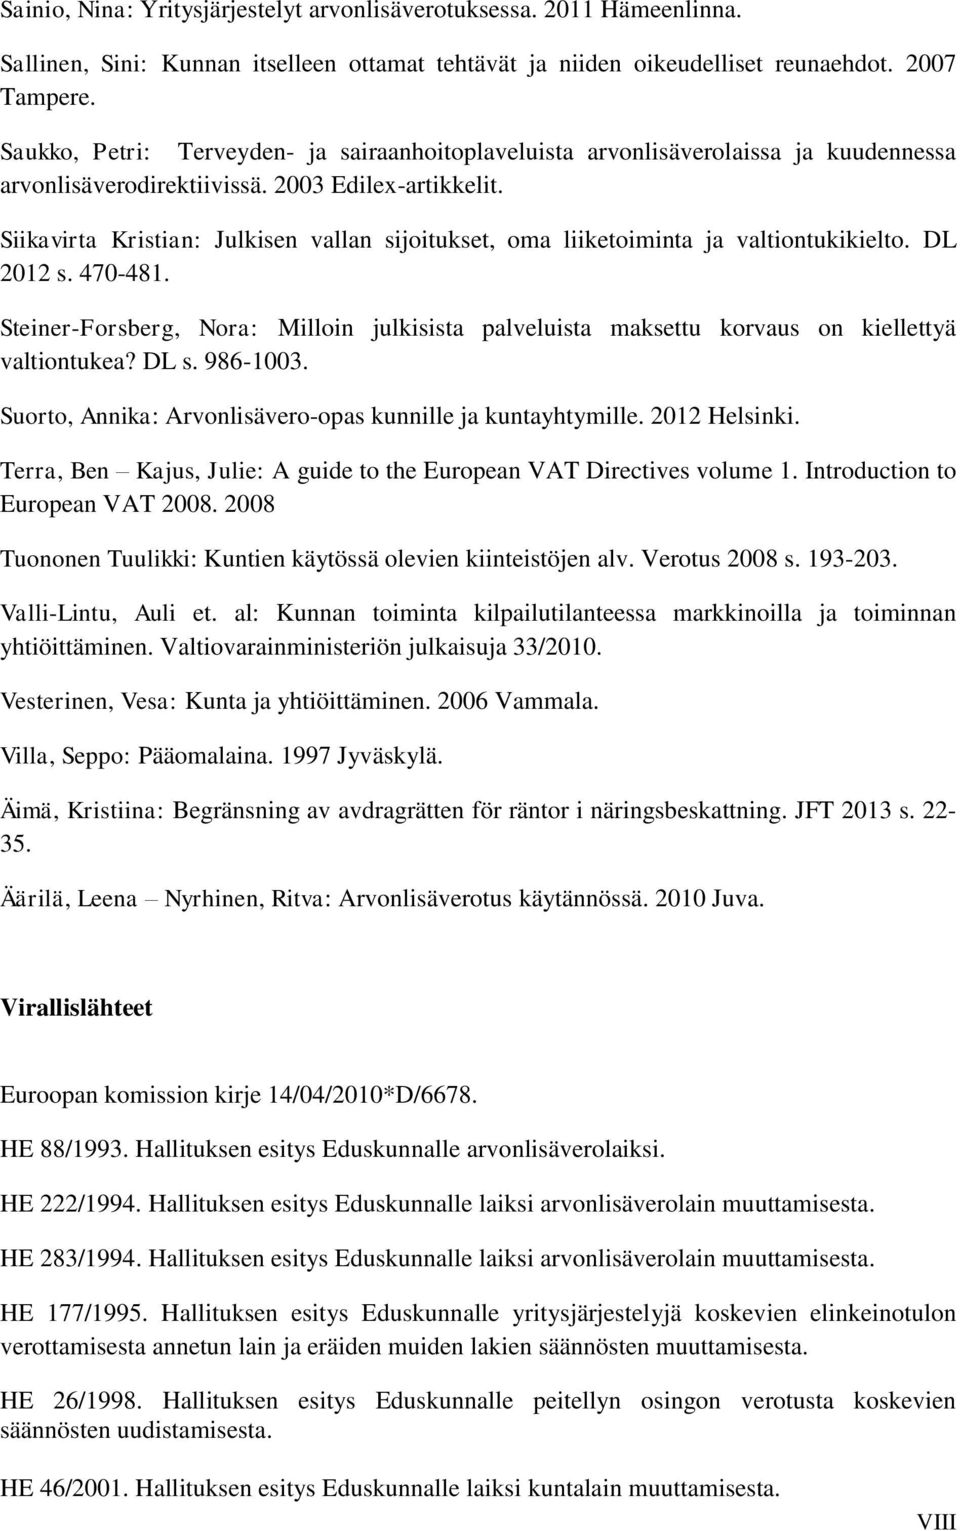 Siikavirta Kristian: Julkisen vallan sijoitukset, oma liiketoiminta ja valtiontukikielto. DL 2012 s. 470-481.